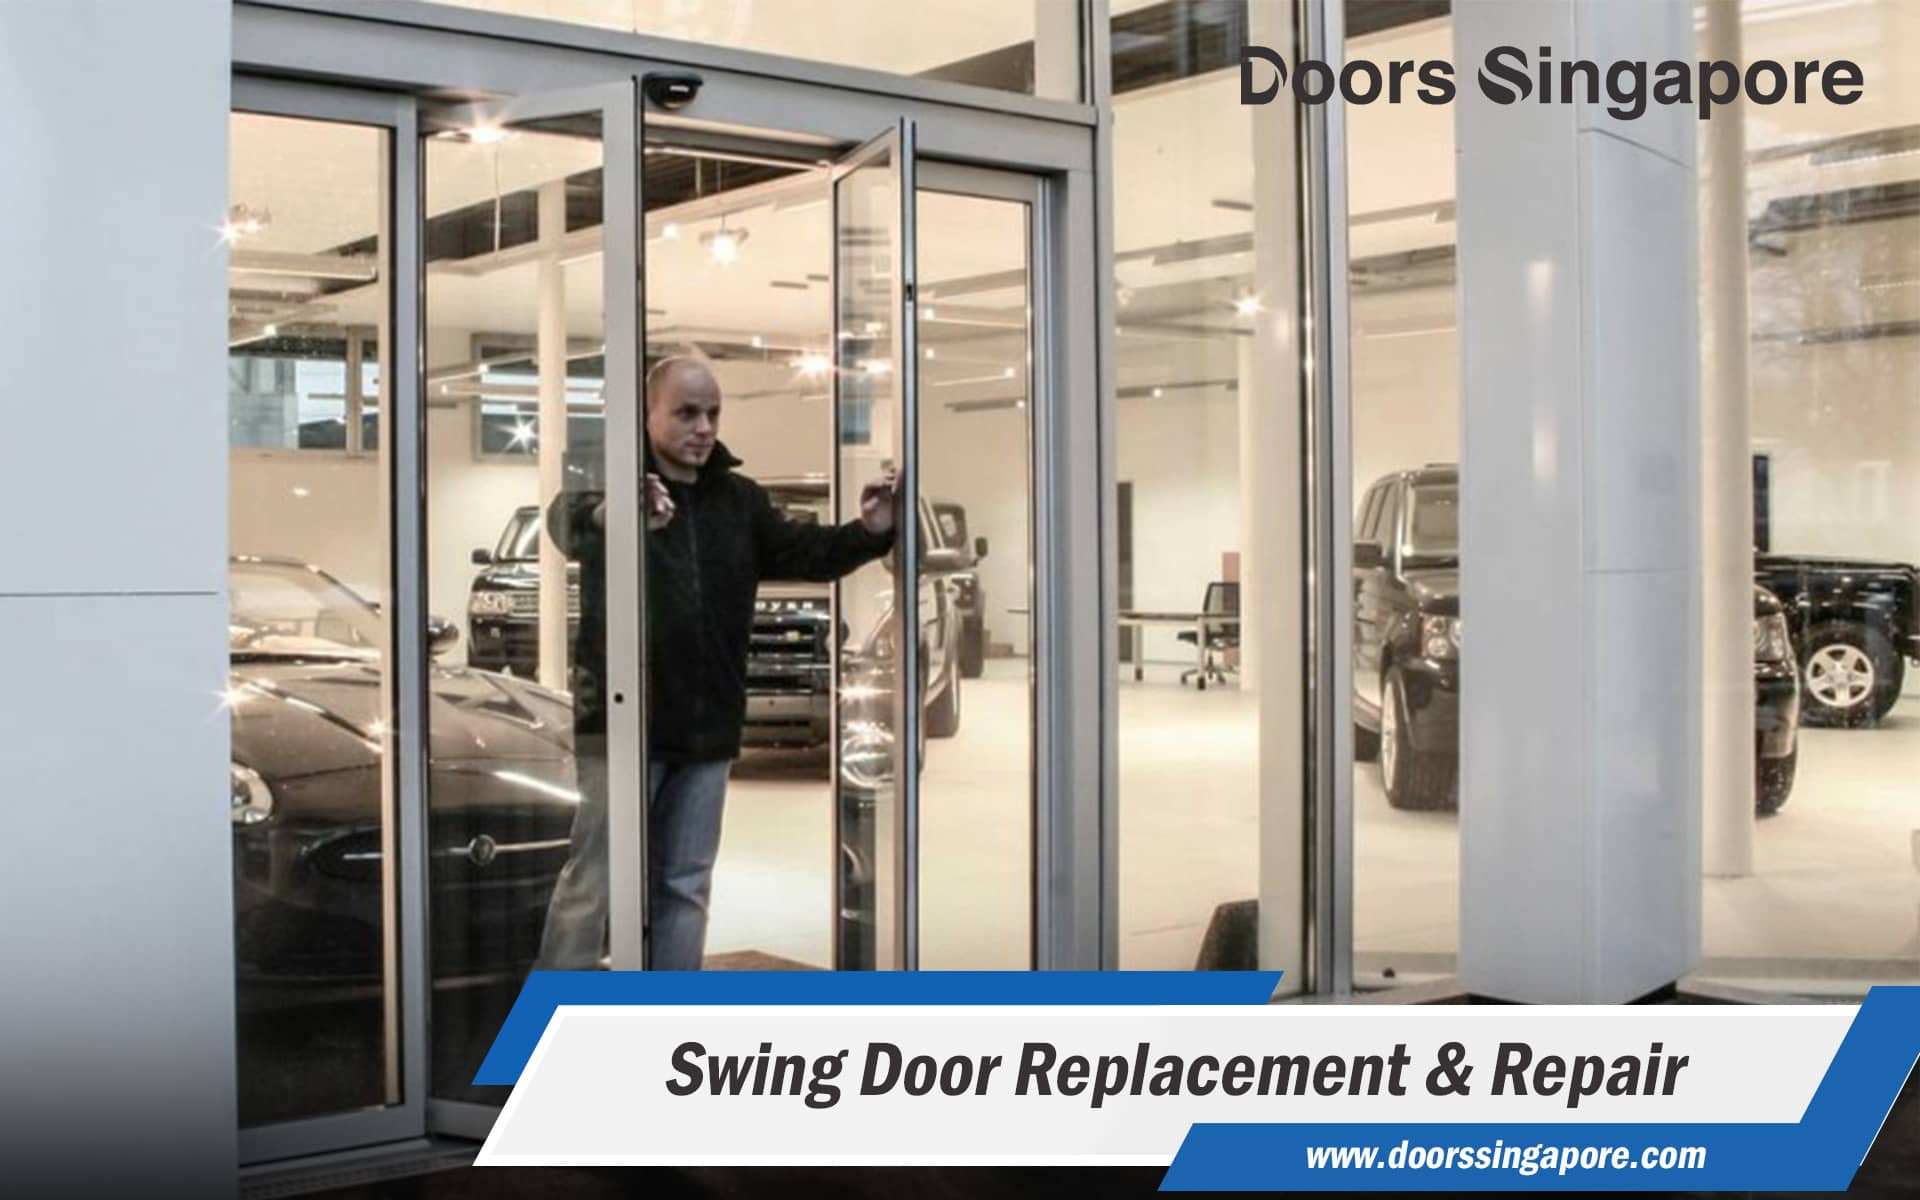 Swing Door Replacement & Repair